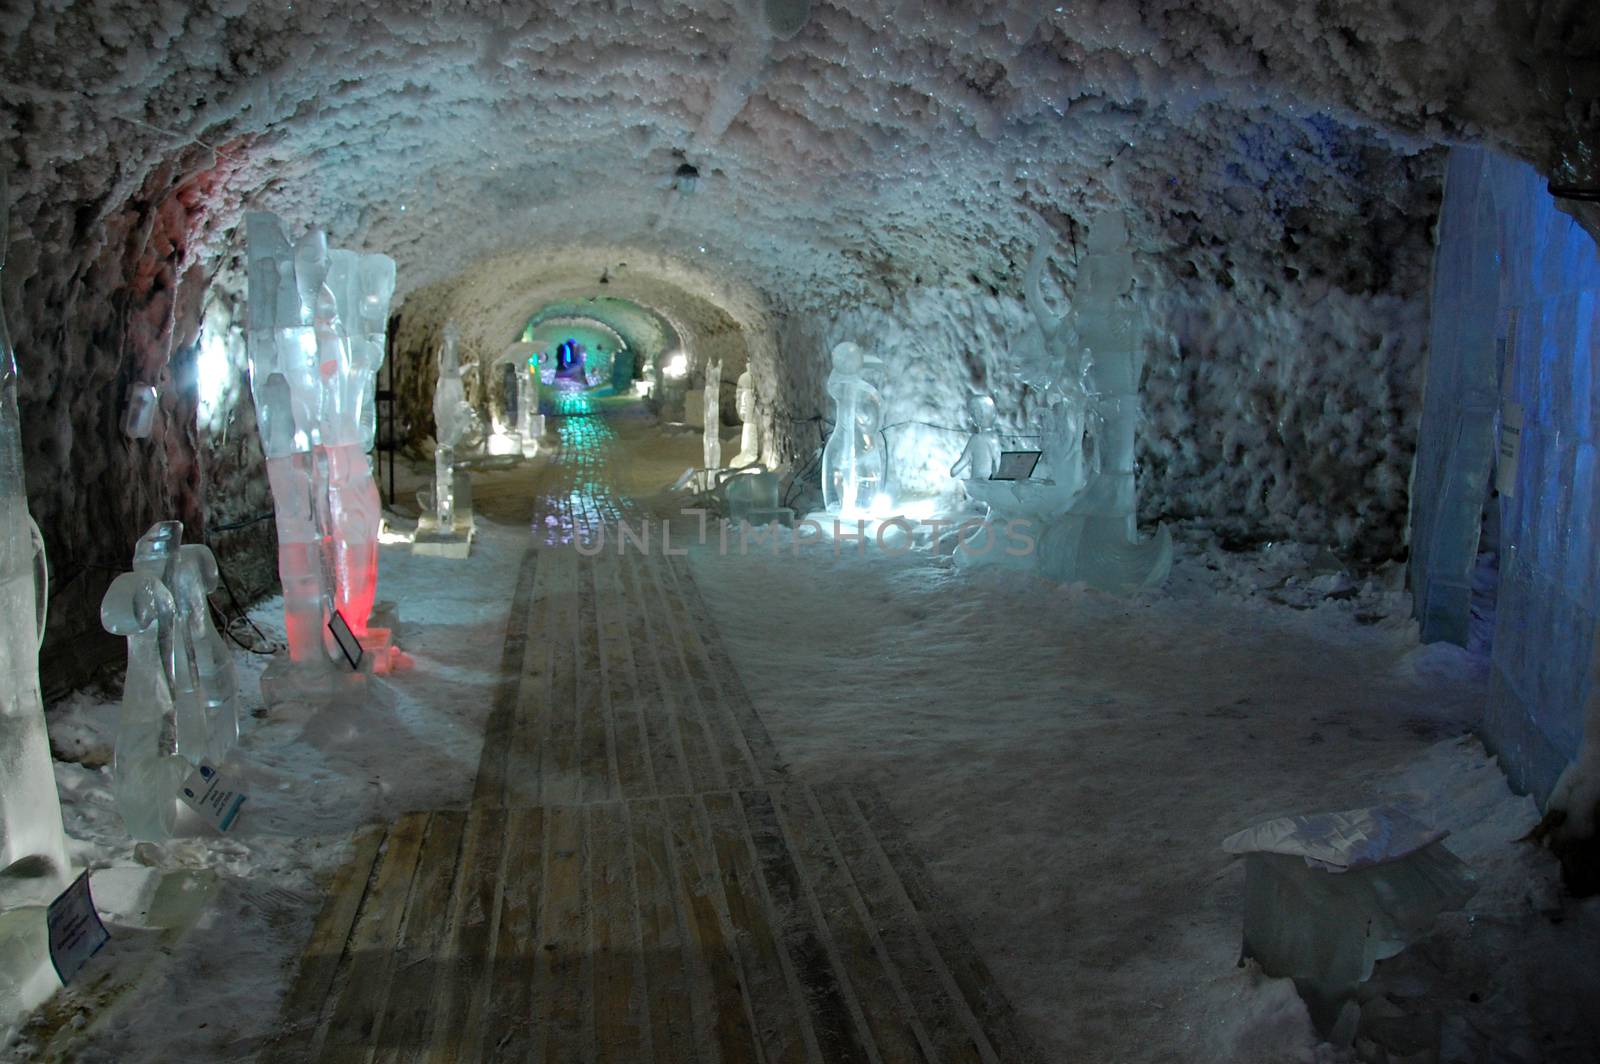 Underground permafrost ice cave, Yakutsk, Russia